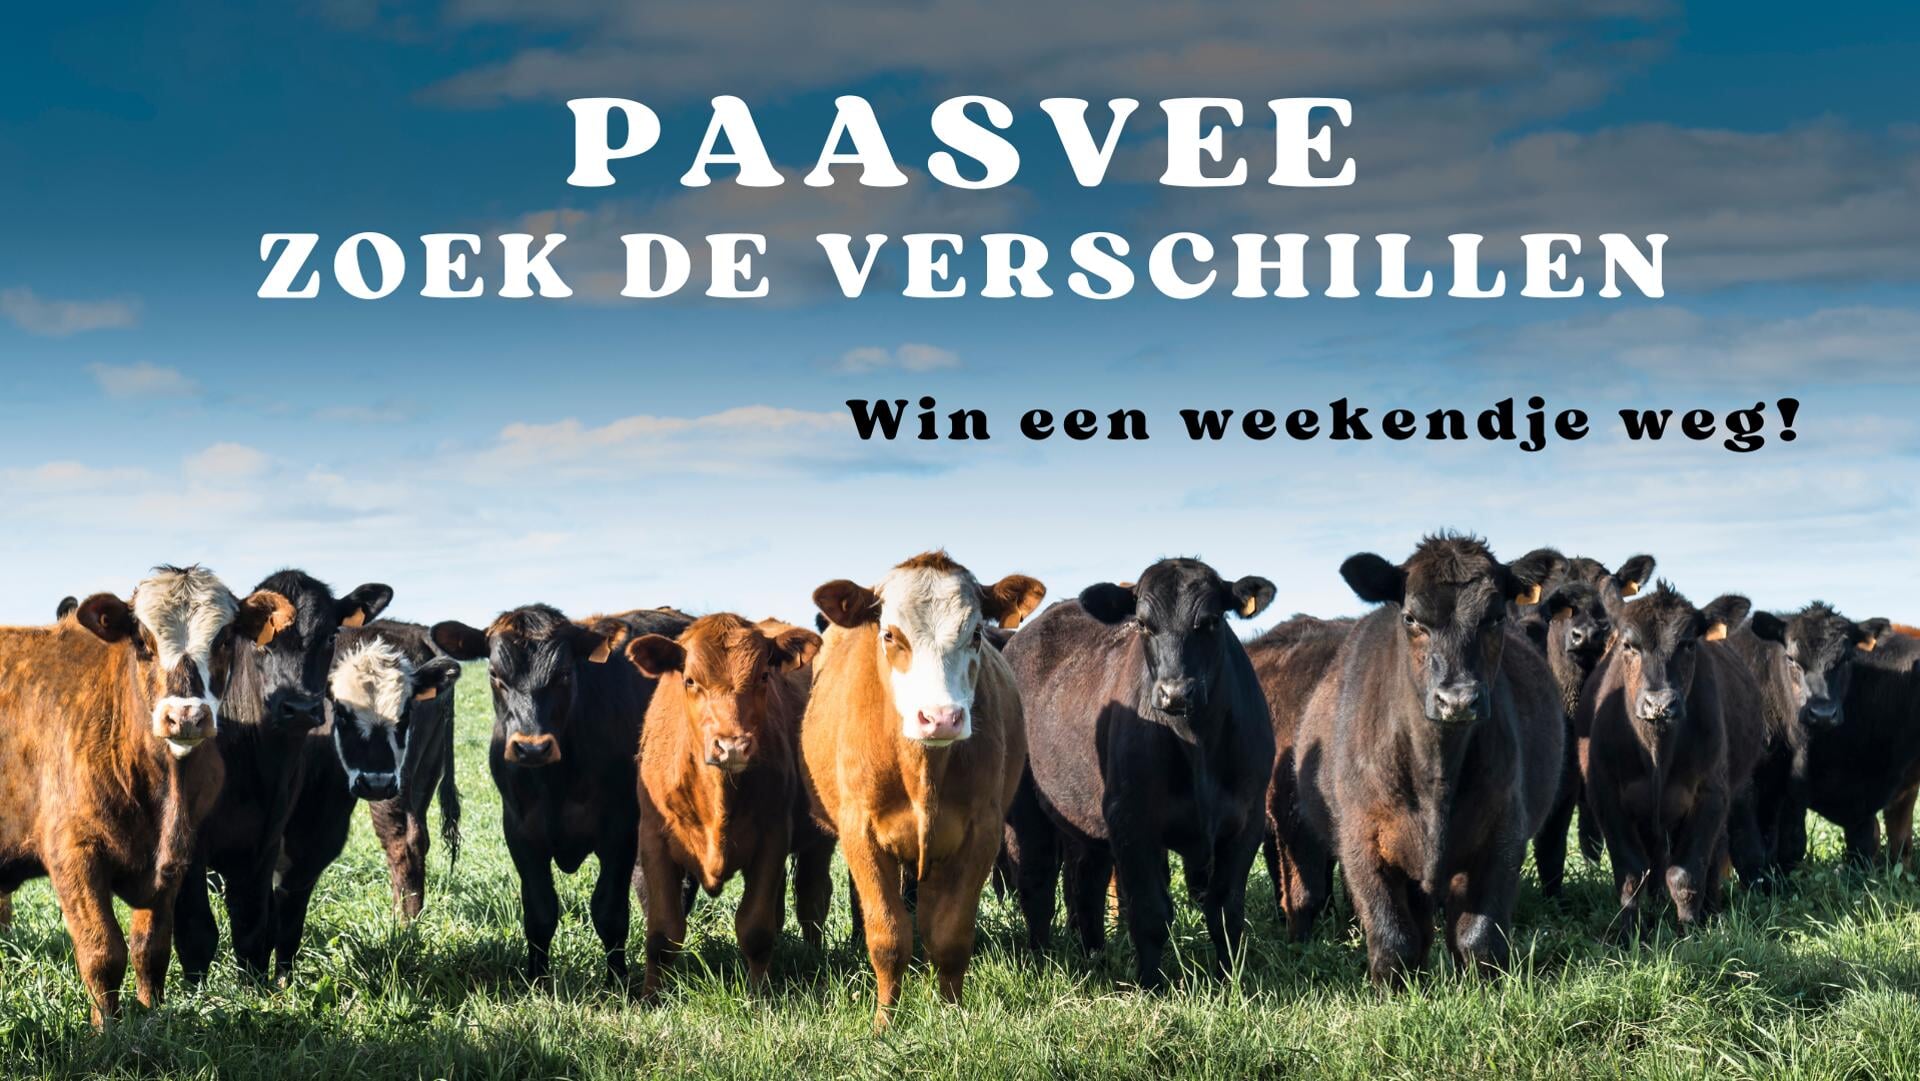 WIN: zoek de verschillen Paasvee-editie en win een weekendje weg!